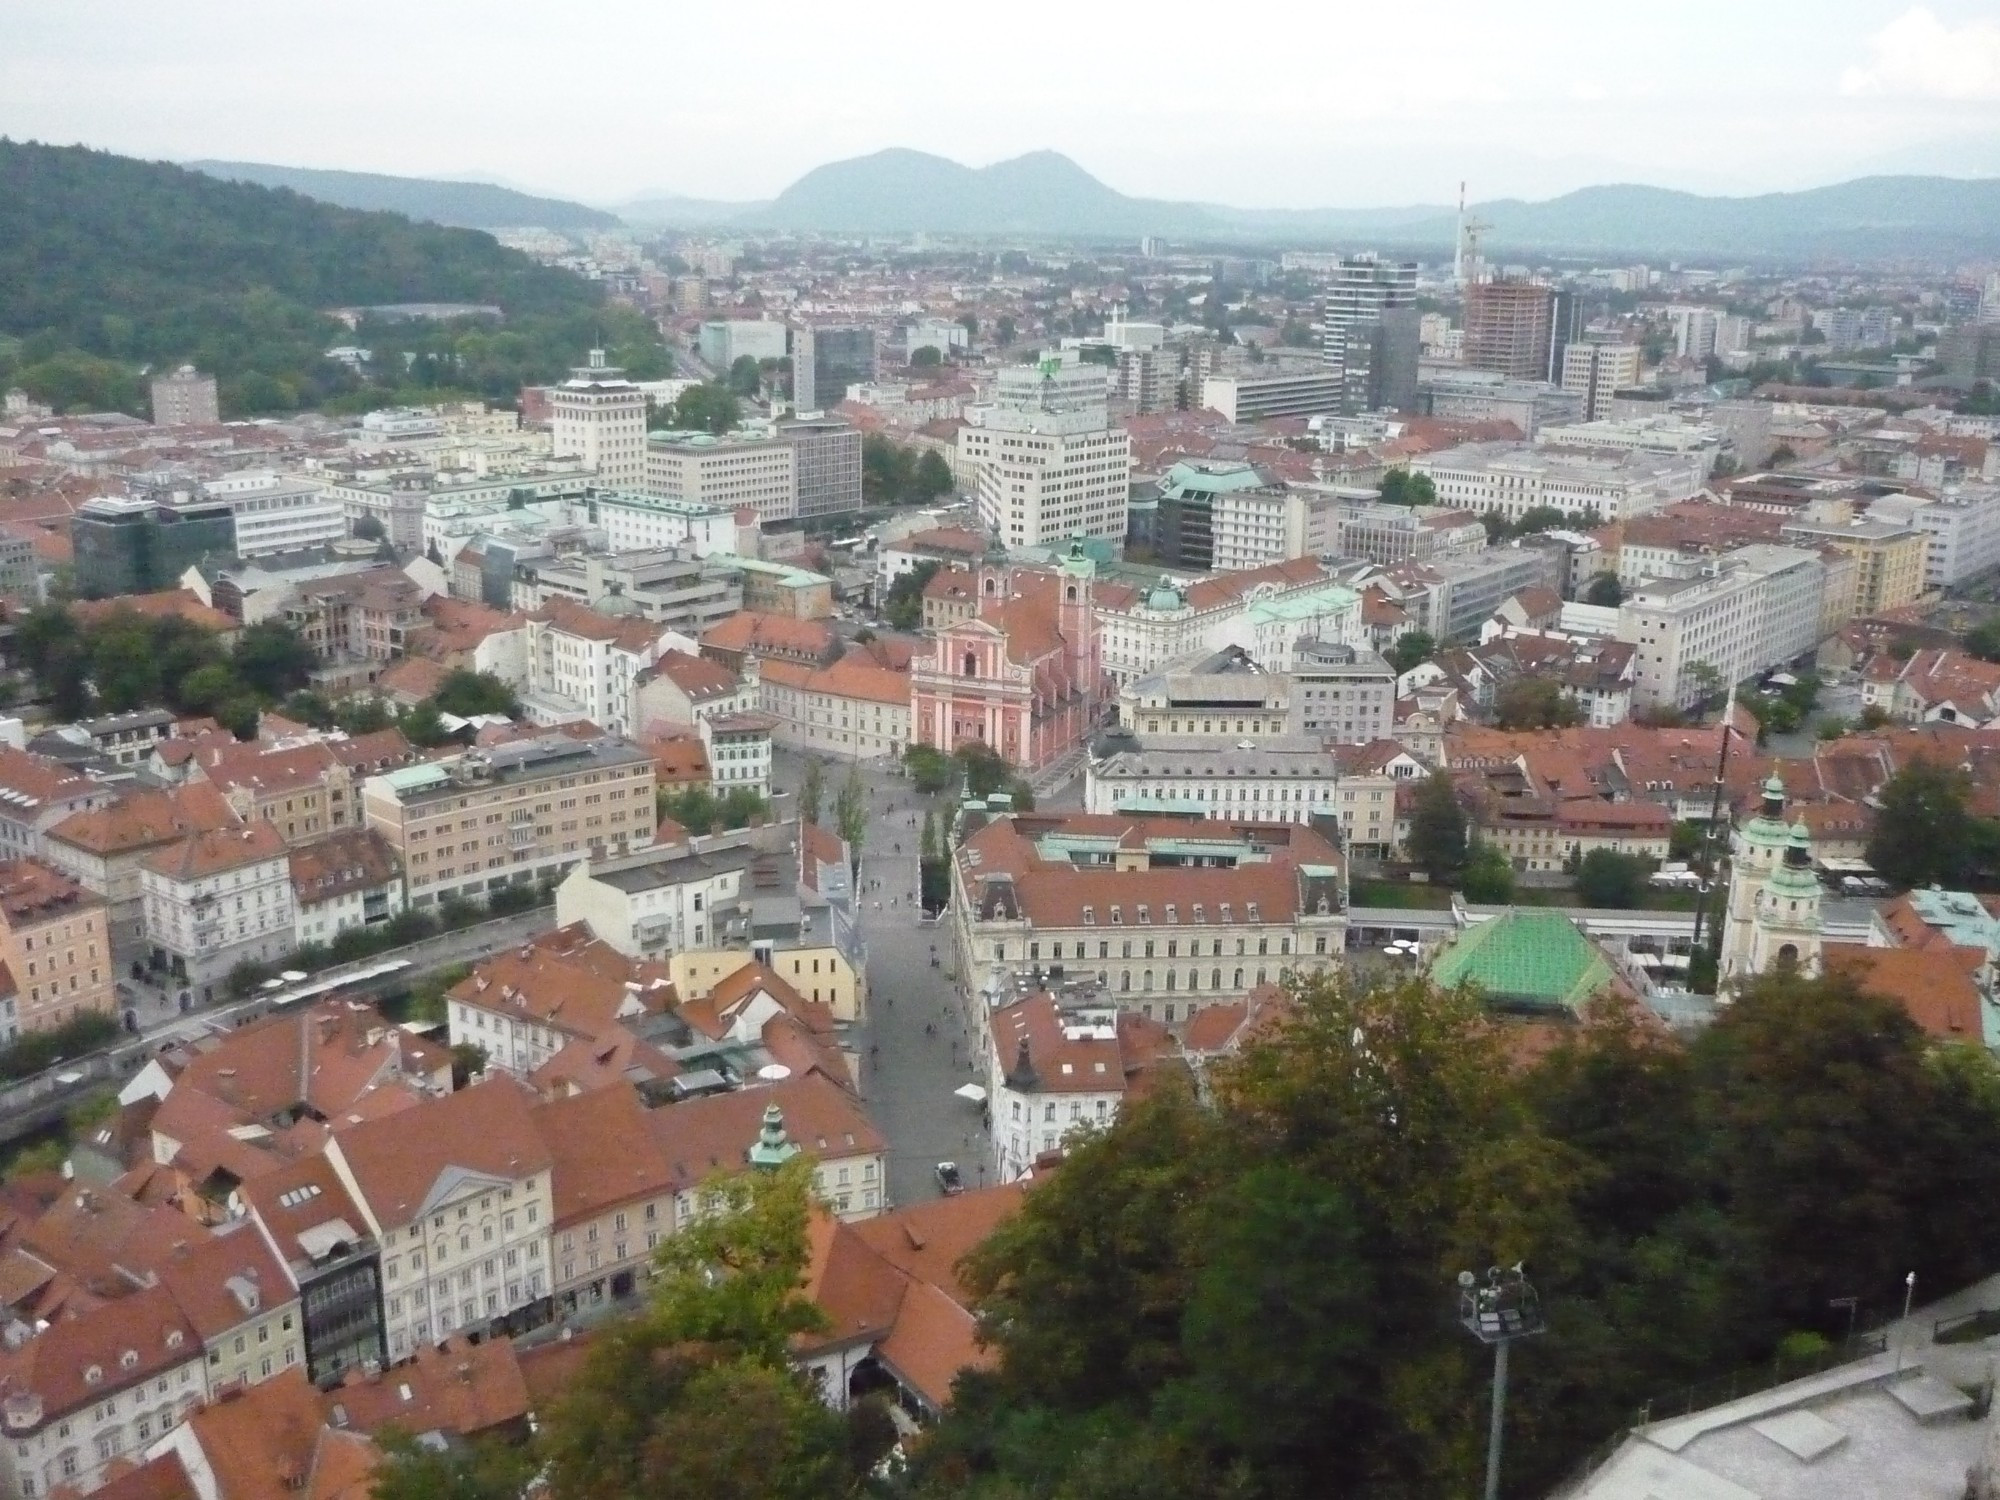 Ljubljana, Slovenia